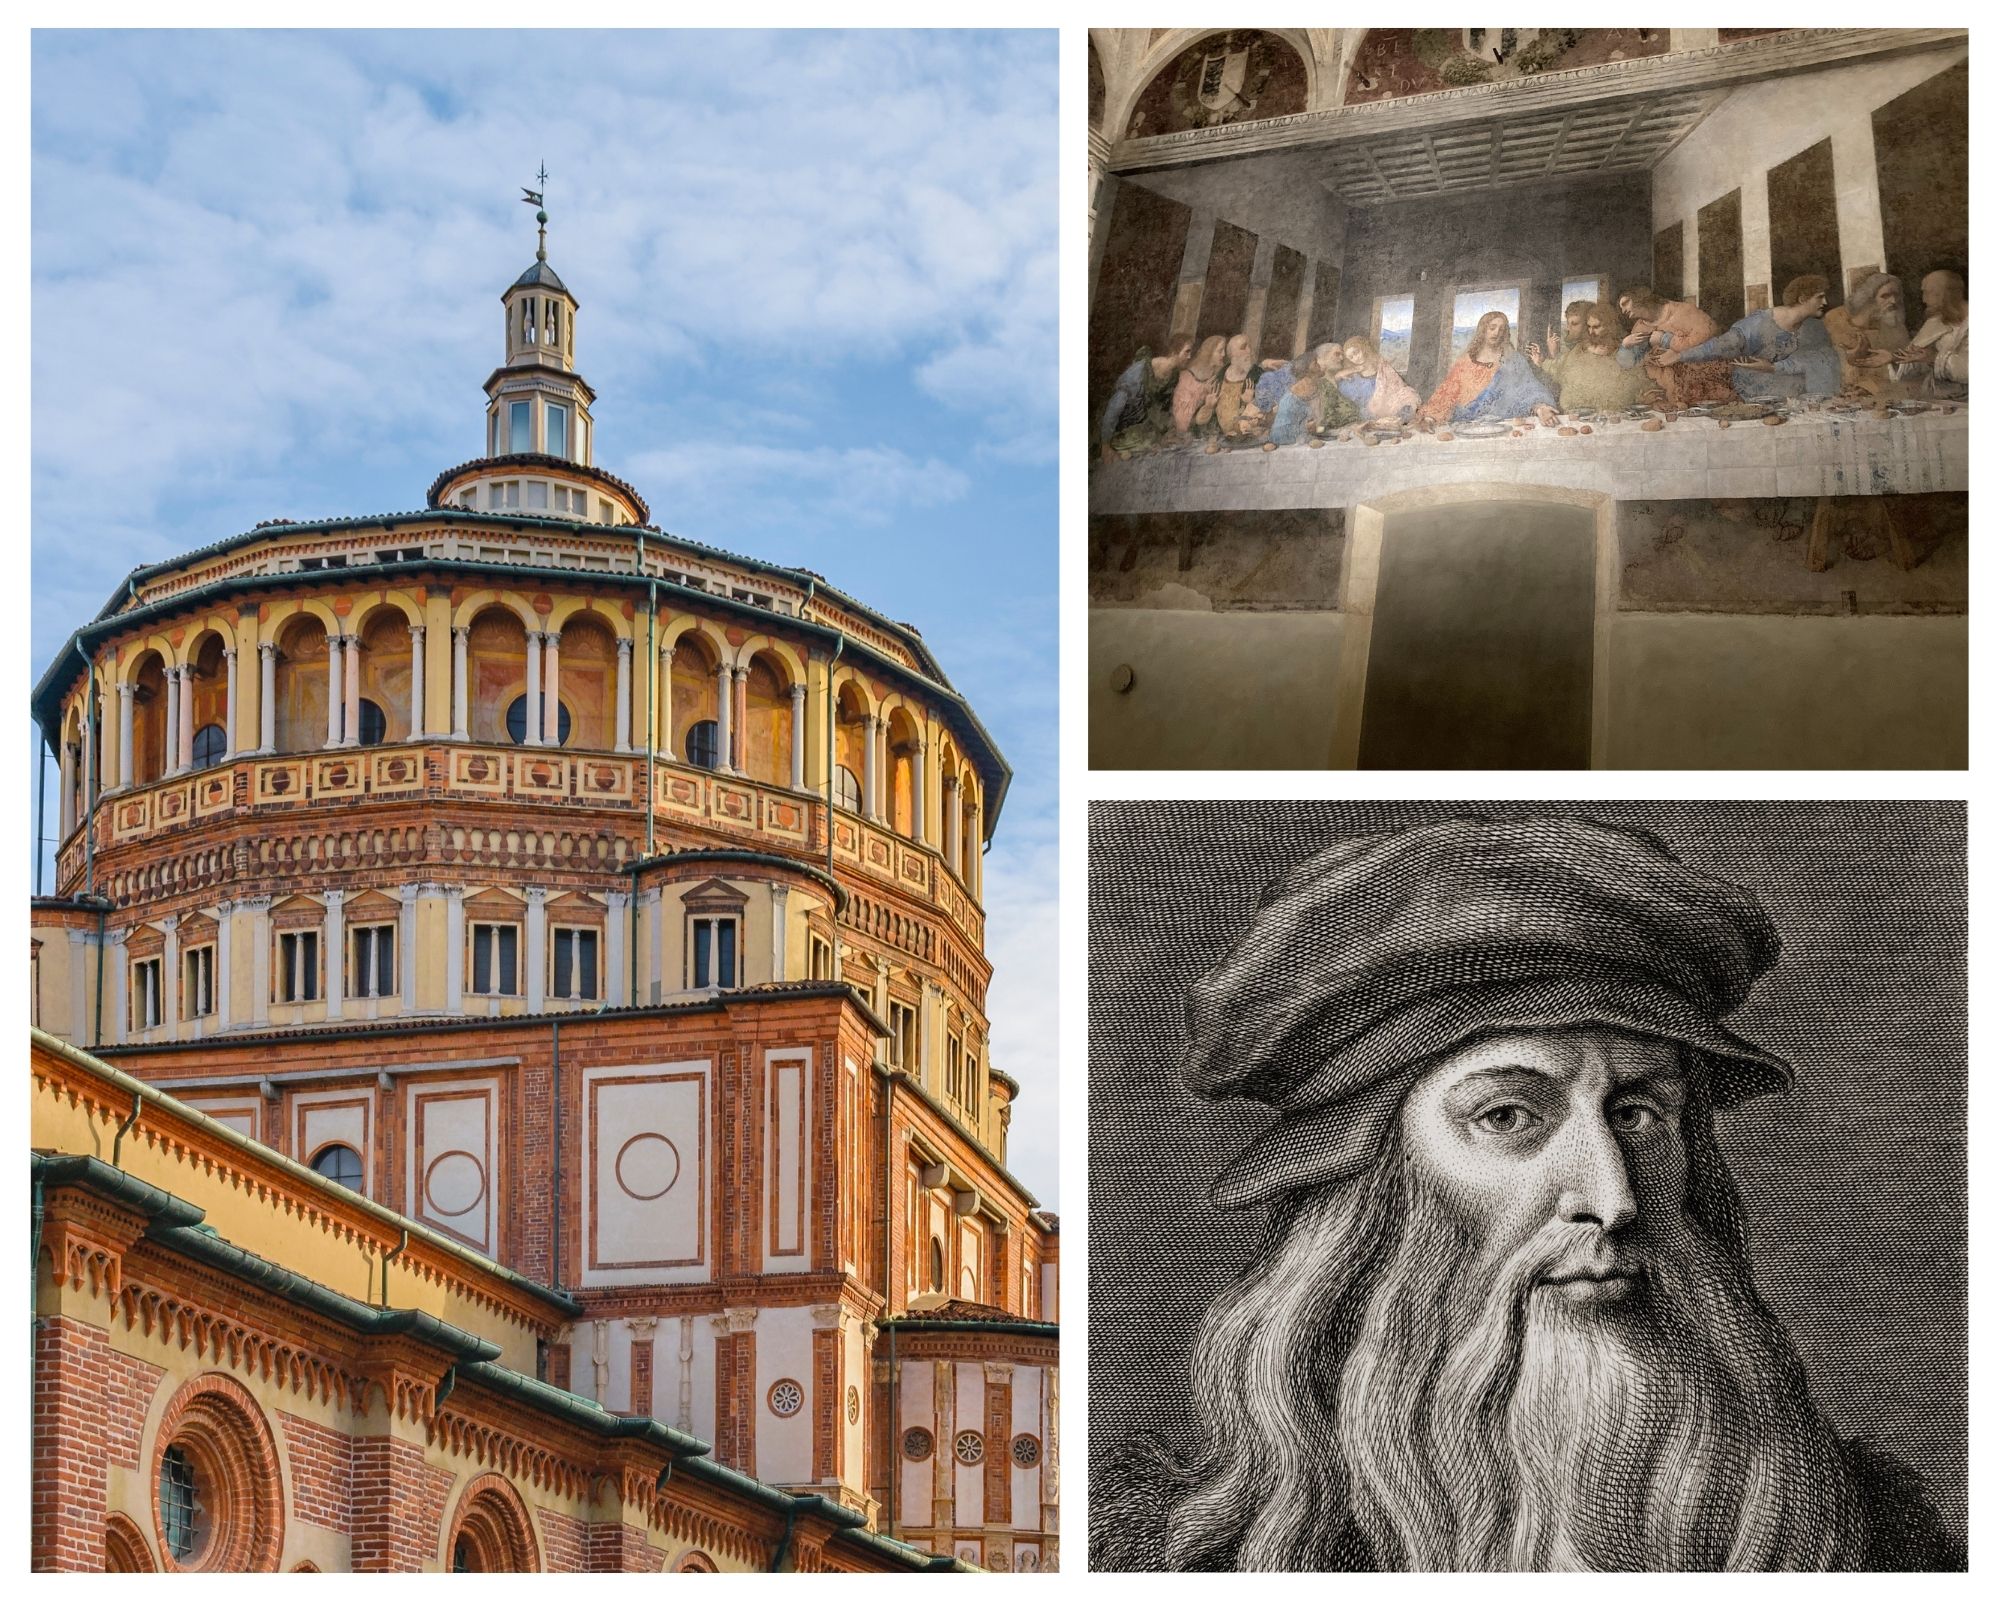 Guided Tour - Da Vinci's Last Supper and Santa Maria delle Grazie